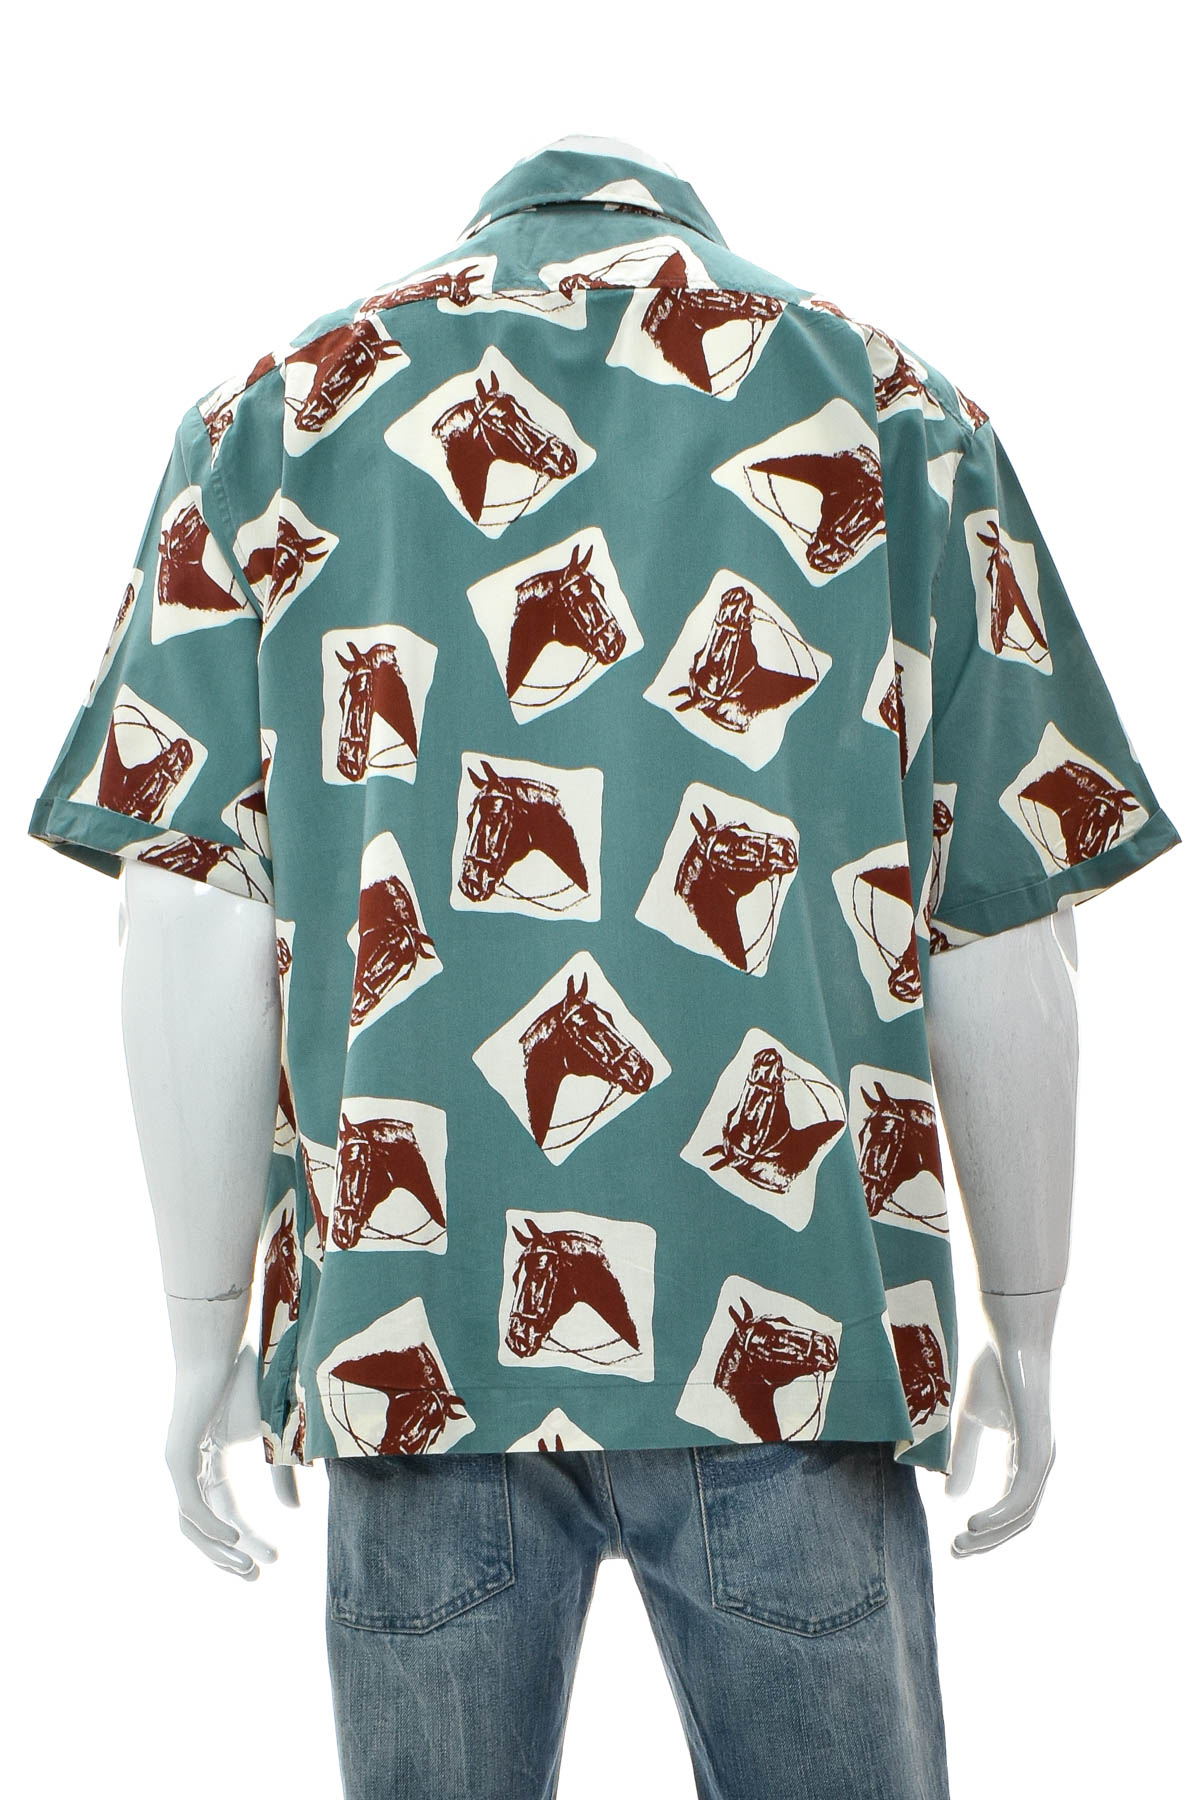 Ανδρικό πουκάμισο - Penguin - 1